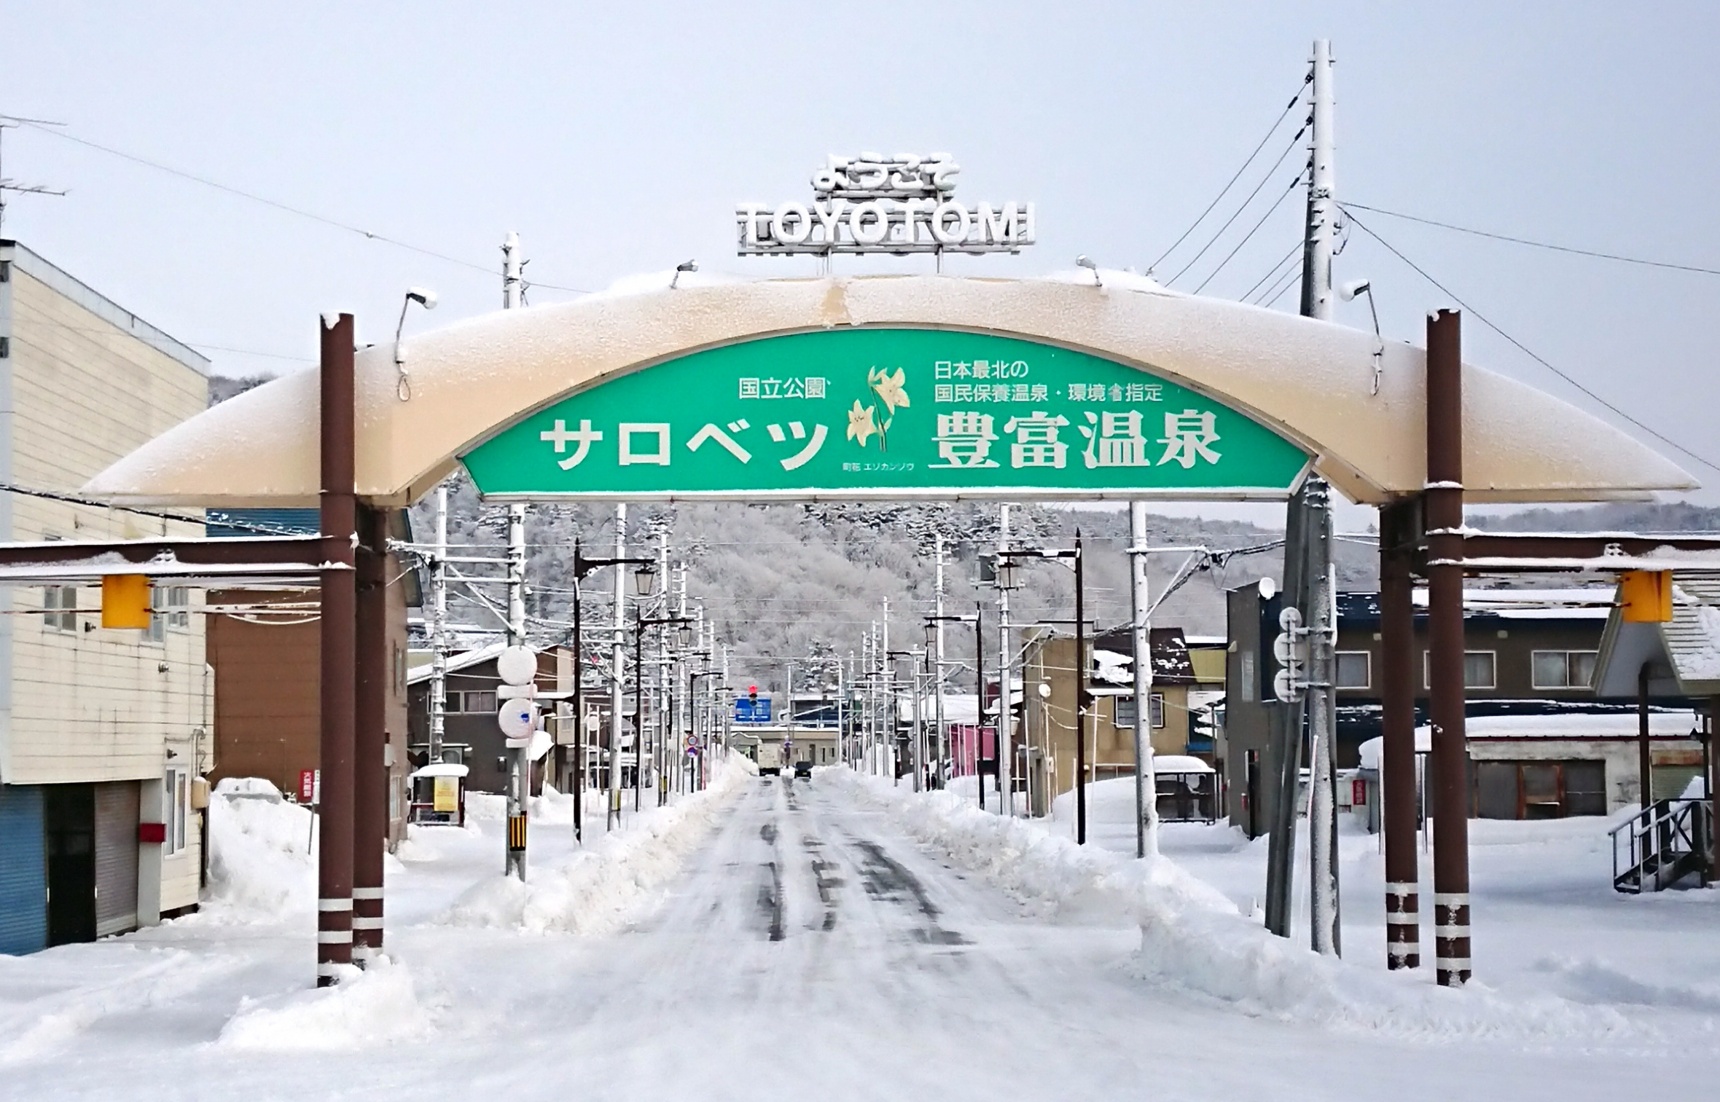 【北海道自由行】美食・雪上體驗與設計旅宿 讓人心暖暖的豐富町